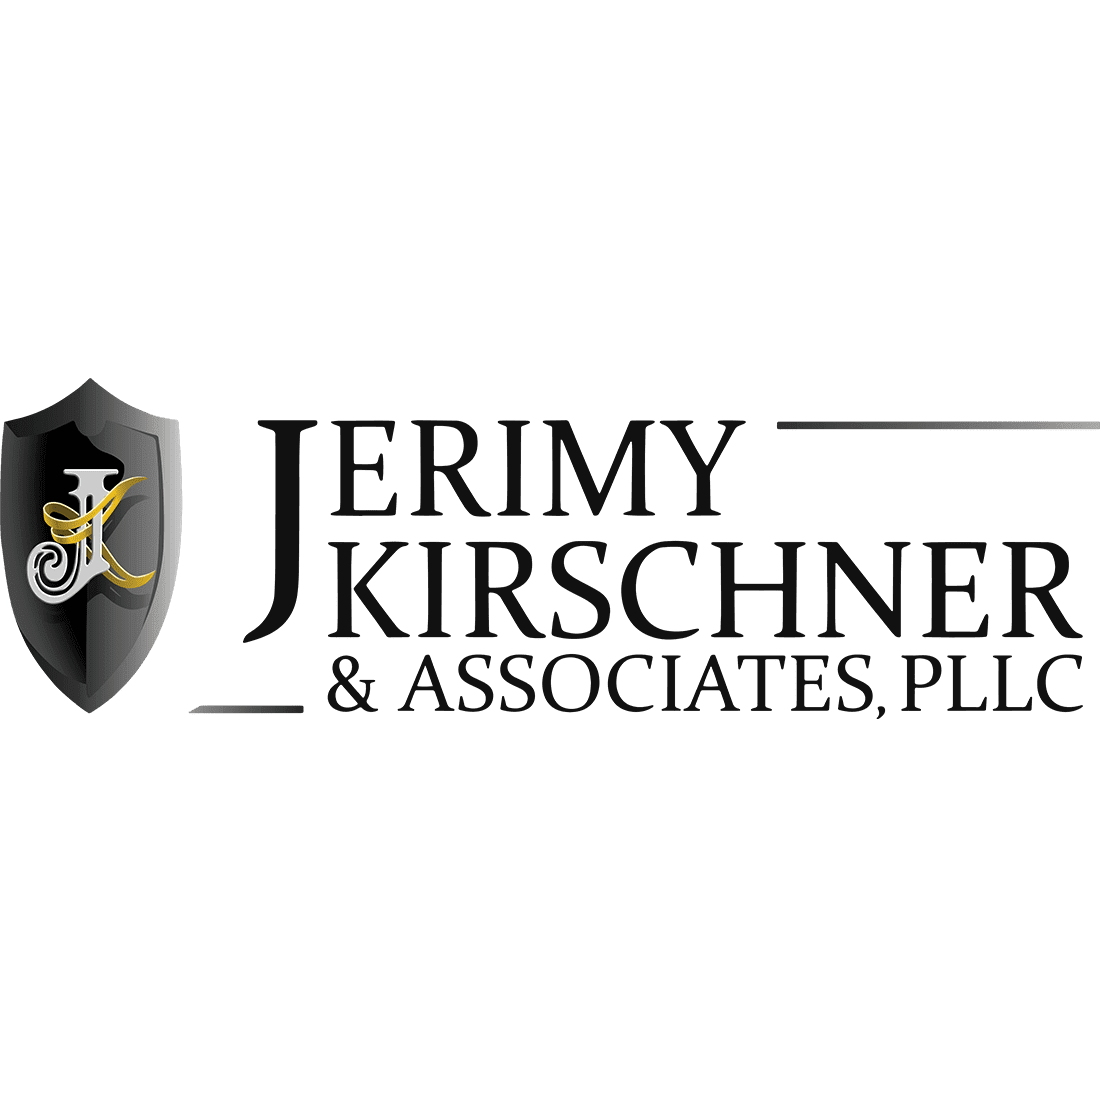 Jerimy Kirschner & Associates, PLLC - Las Vegas, NV 89149 - (702)563-4444 | ShowMeLocal.com